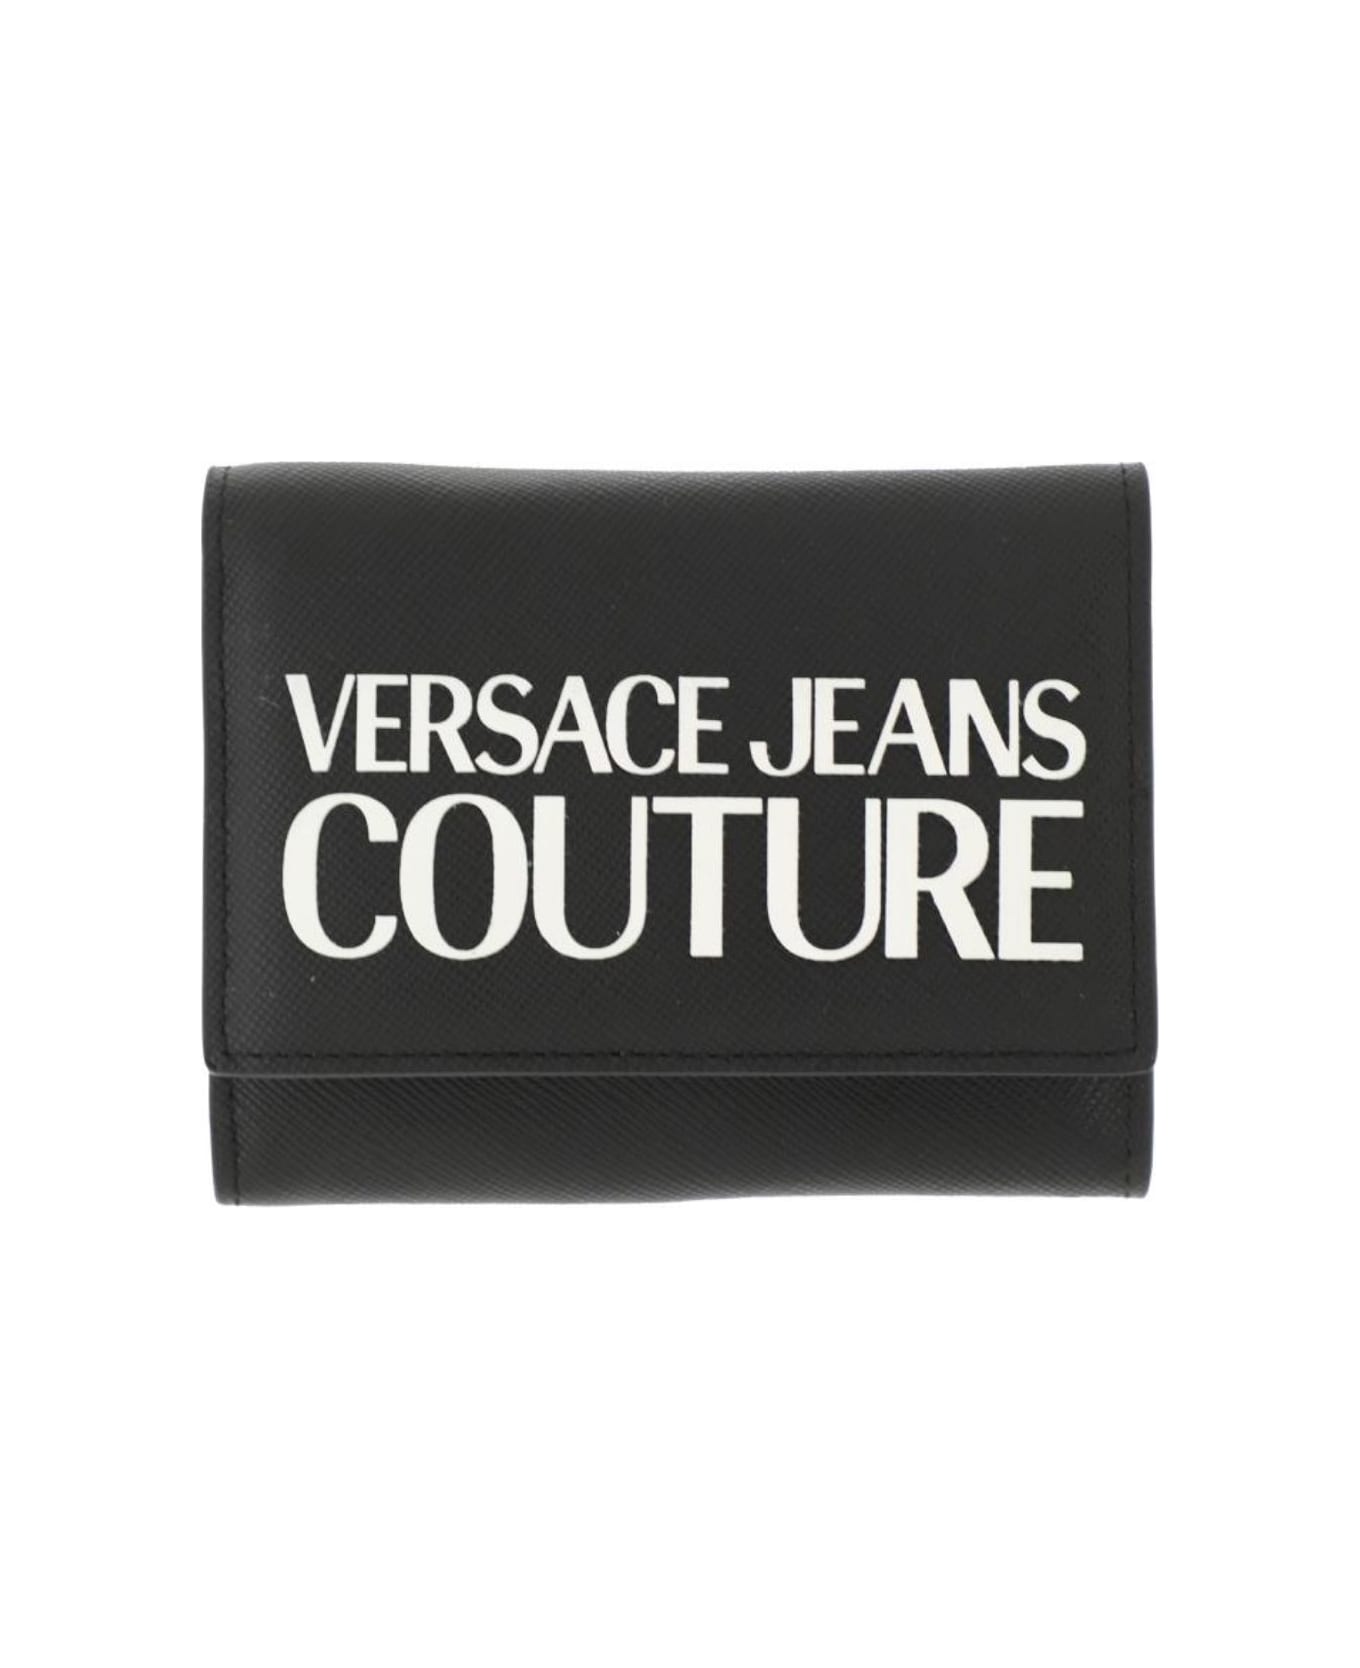 Versace Jeans Couture Wallet - BLACK 財布